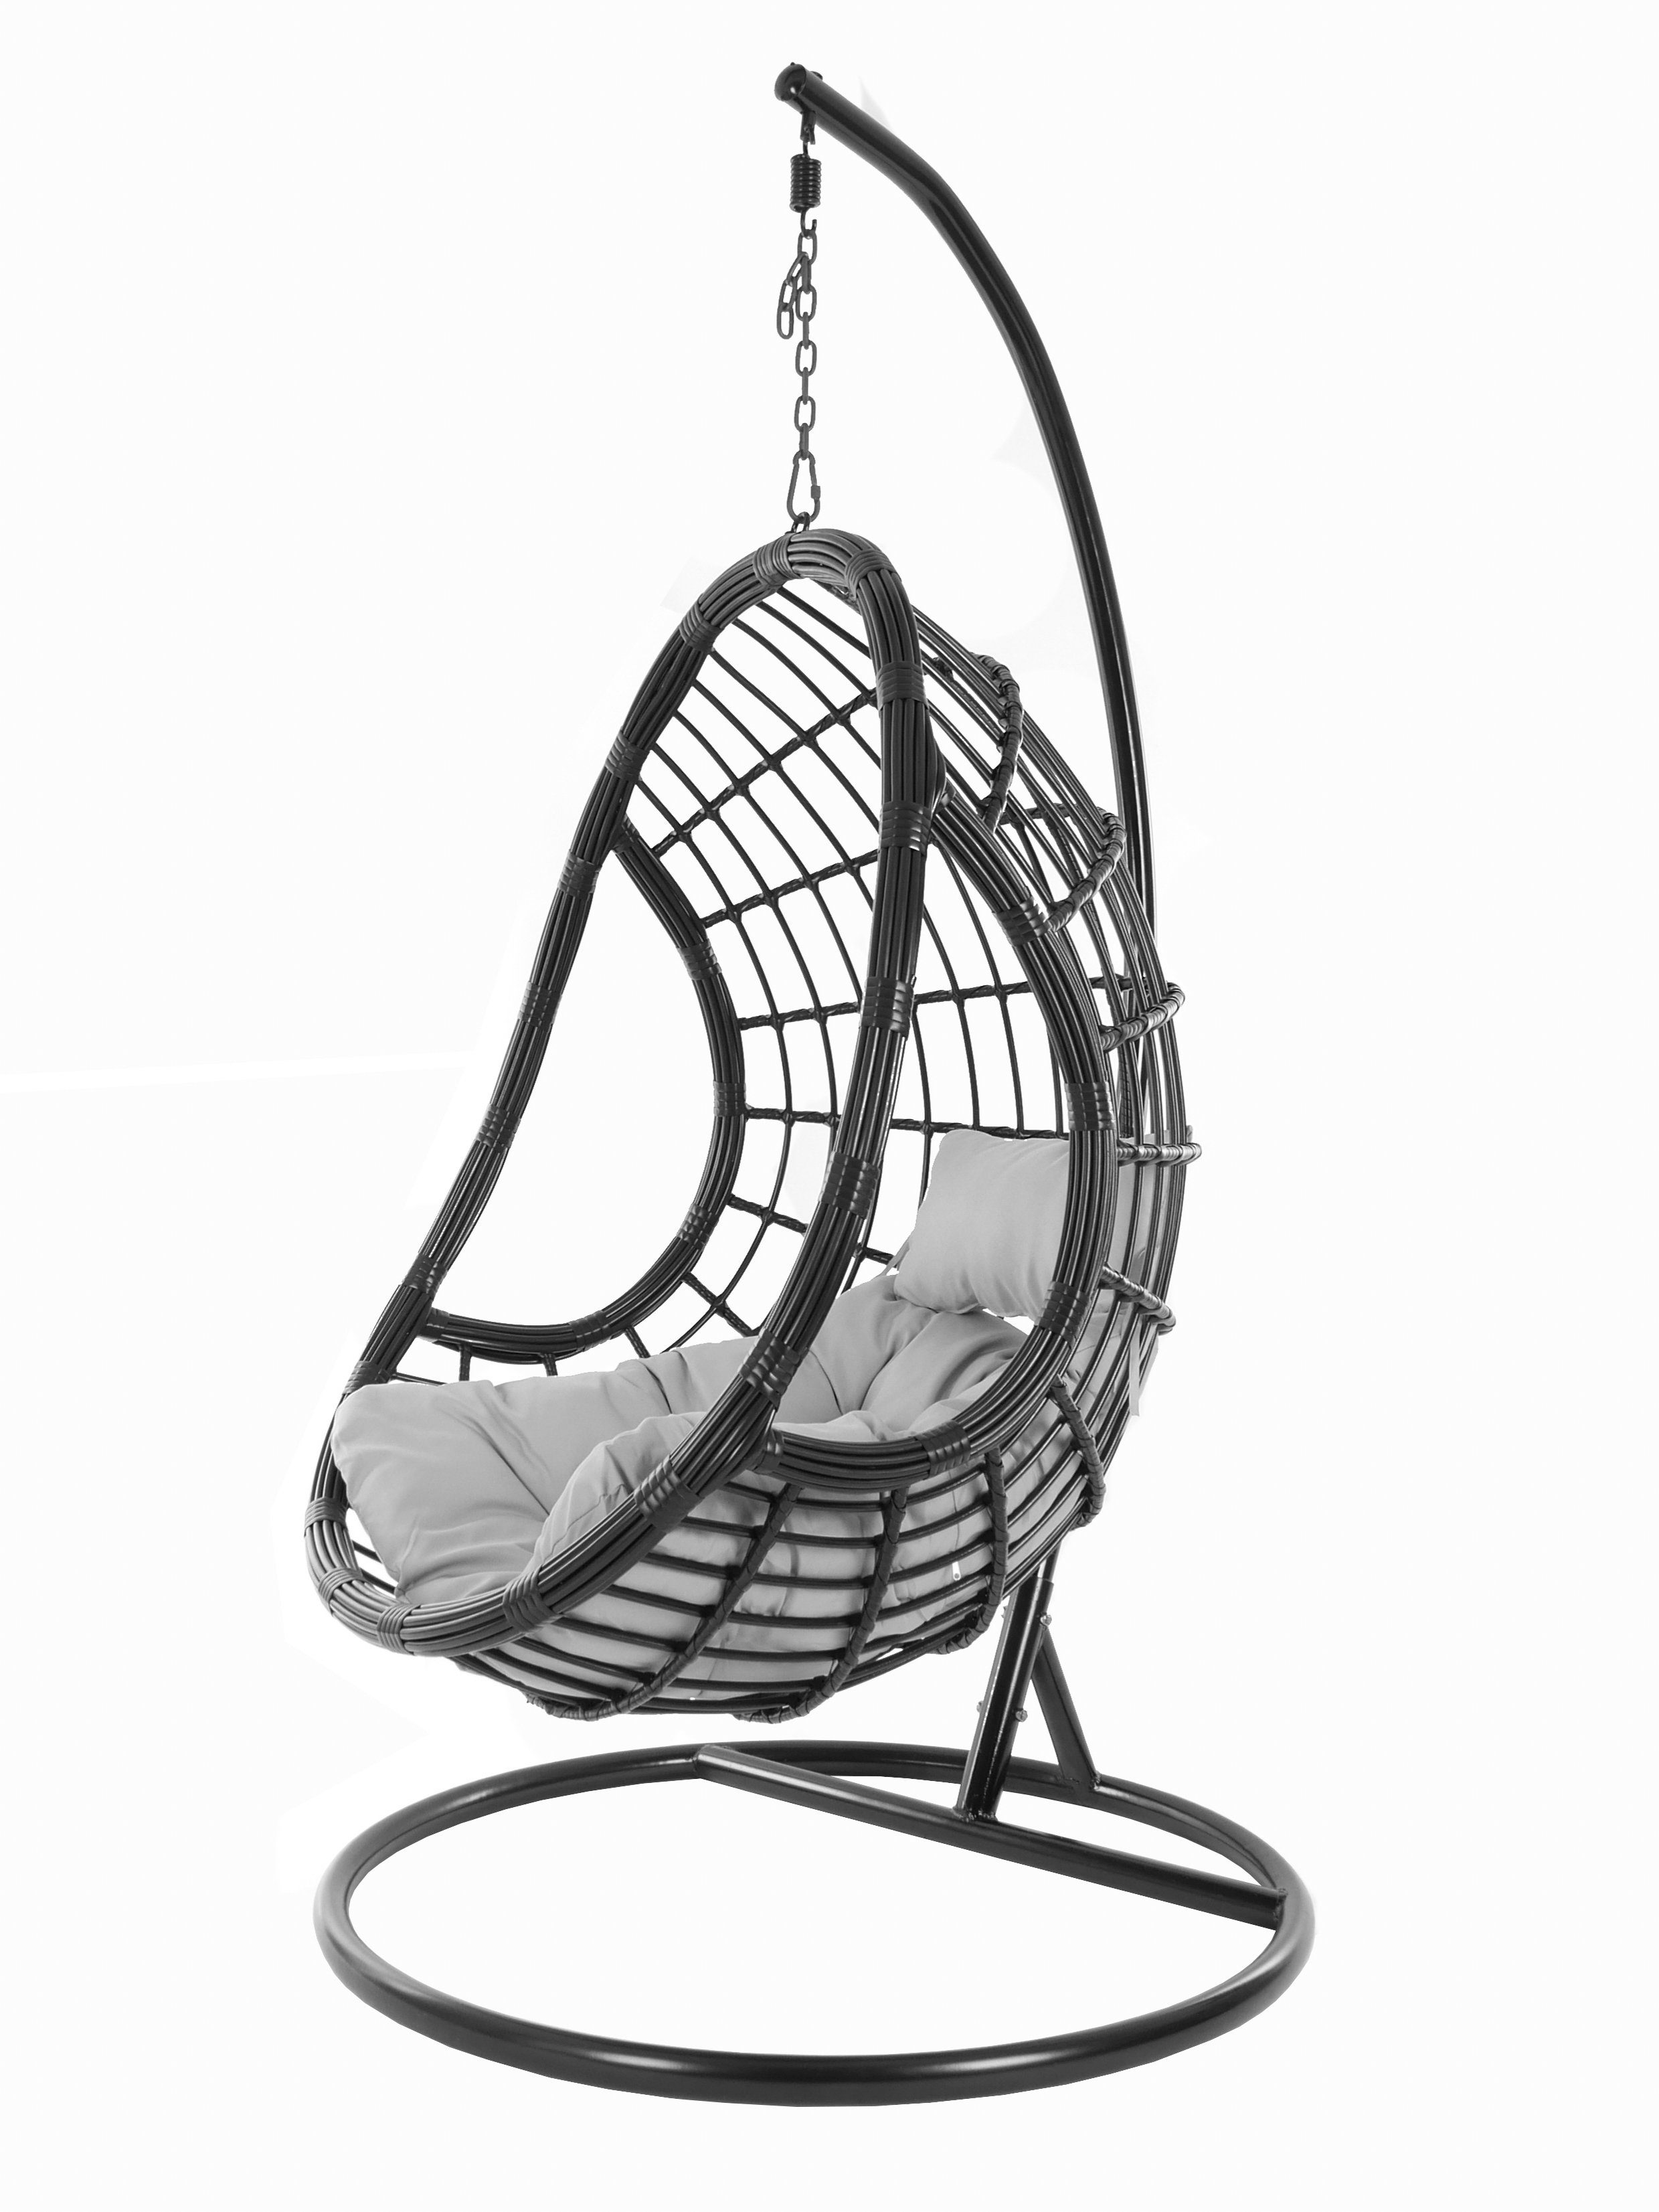 edles PALMANOVA Kissen, Design Swing KIDEO Schwebesessel, Gestell Hängesessel schwarz, black, mit (8008 Chair, cloud) und Hängesessel Loungemöbel, grau